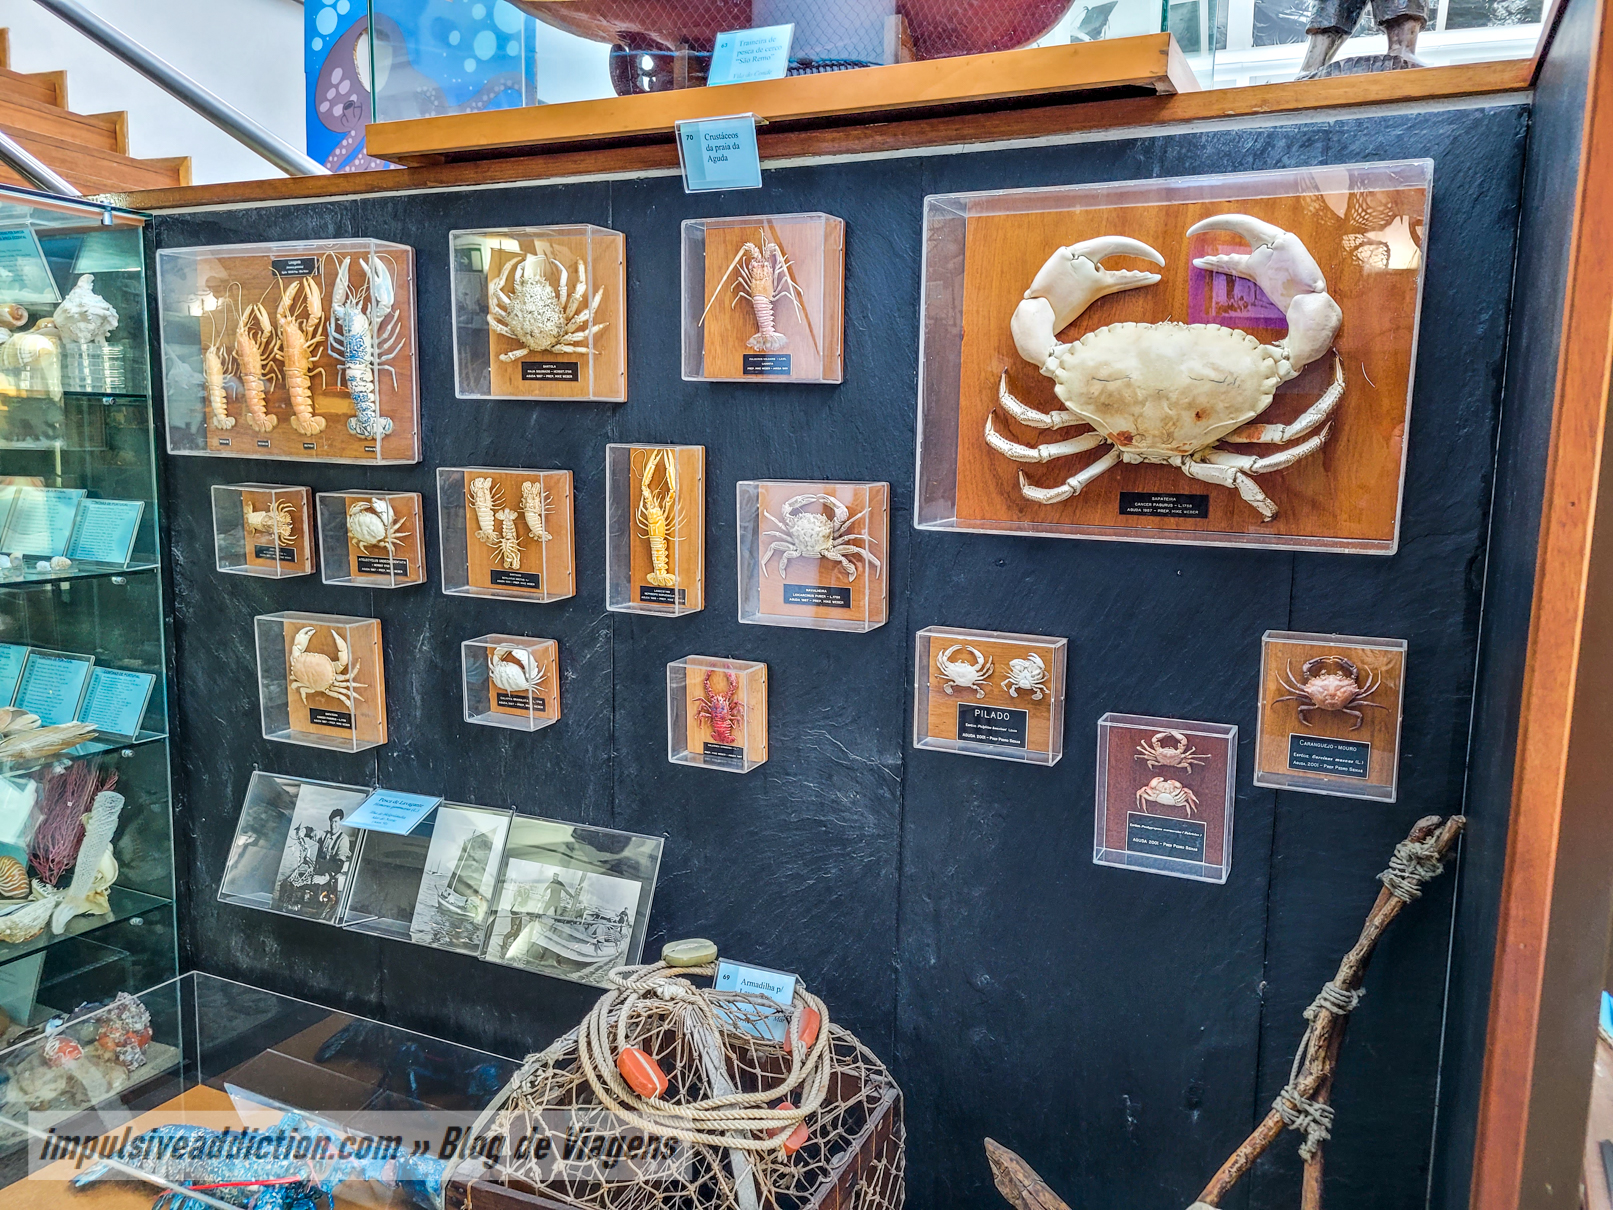 Museu da Pesca da Estação Litoral da Aguda